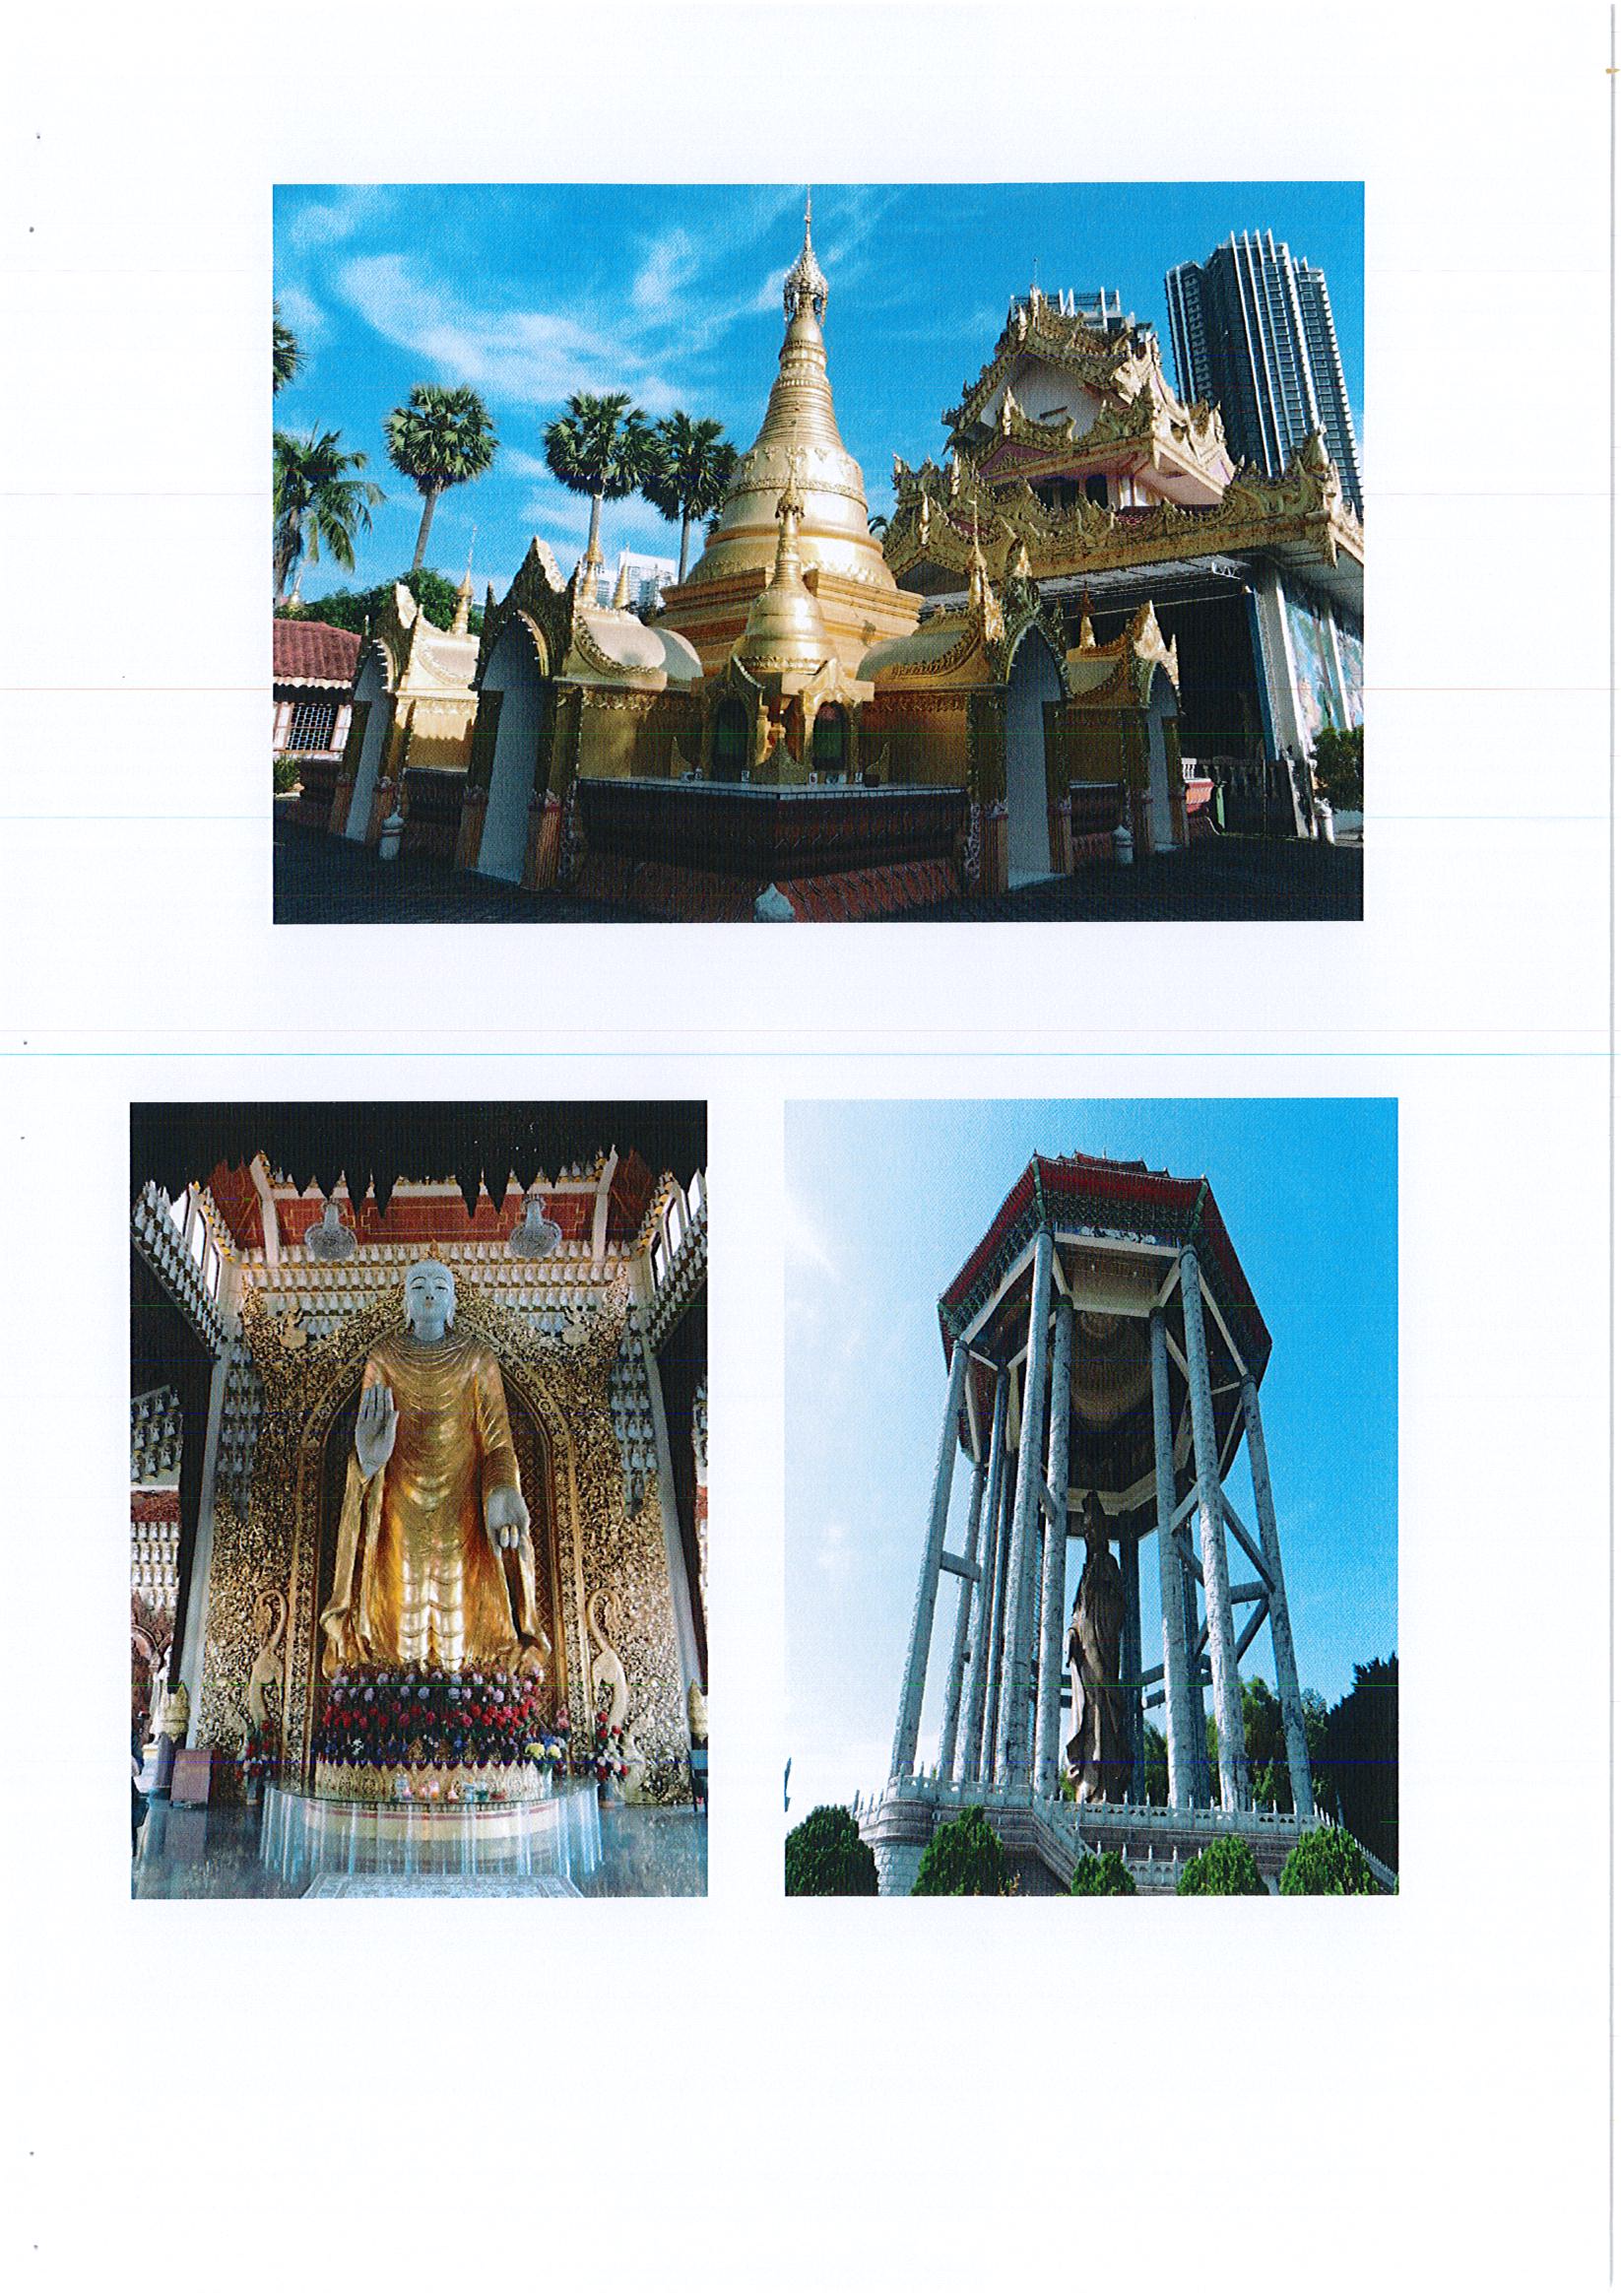 รายงานการเดินทางไปราชการ ณ สาธารณรัฐสังคมนิยมเวียดนาม ระหว่างวันที่ 19 พฤศจิกายน – 1 ธันวาคม 2560 โครงการประชุมสัมมนาวิชาดารนานาชาติว่าด้วยทะเลและทรัพยากรวัฒนธรรมทางทะเลเวียดนามและเอเชียตะวันออกเฉียงใต้